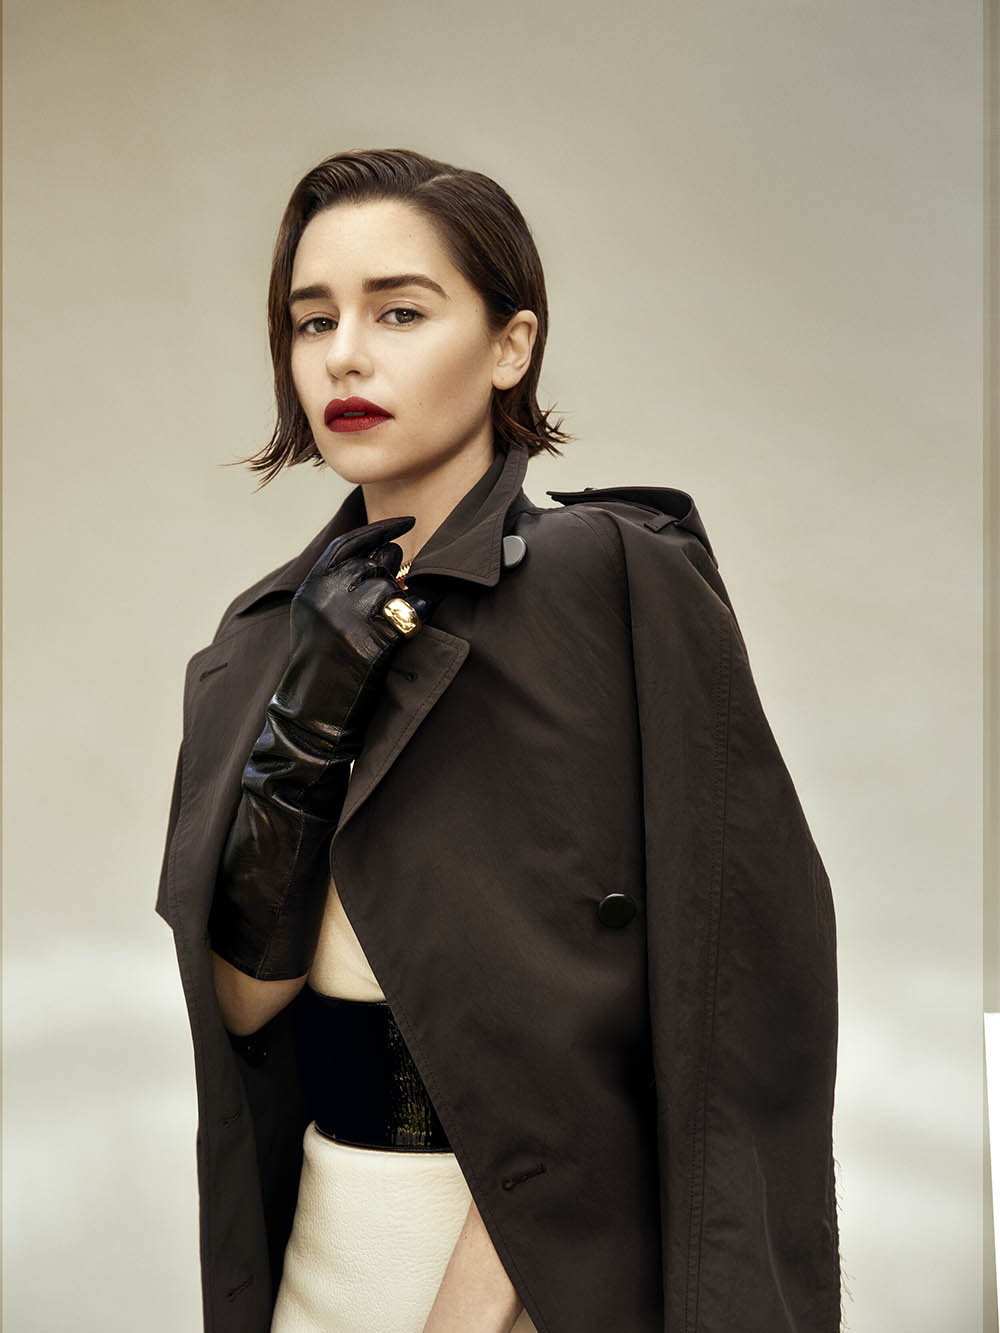 Emilia Clarke covers Flaunt Magazine Issue 166 by Olivia Malone